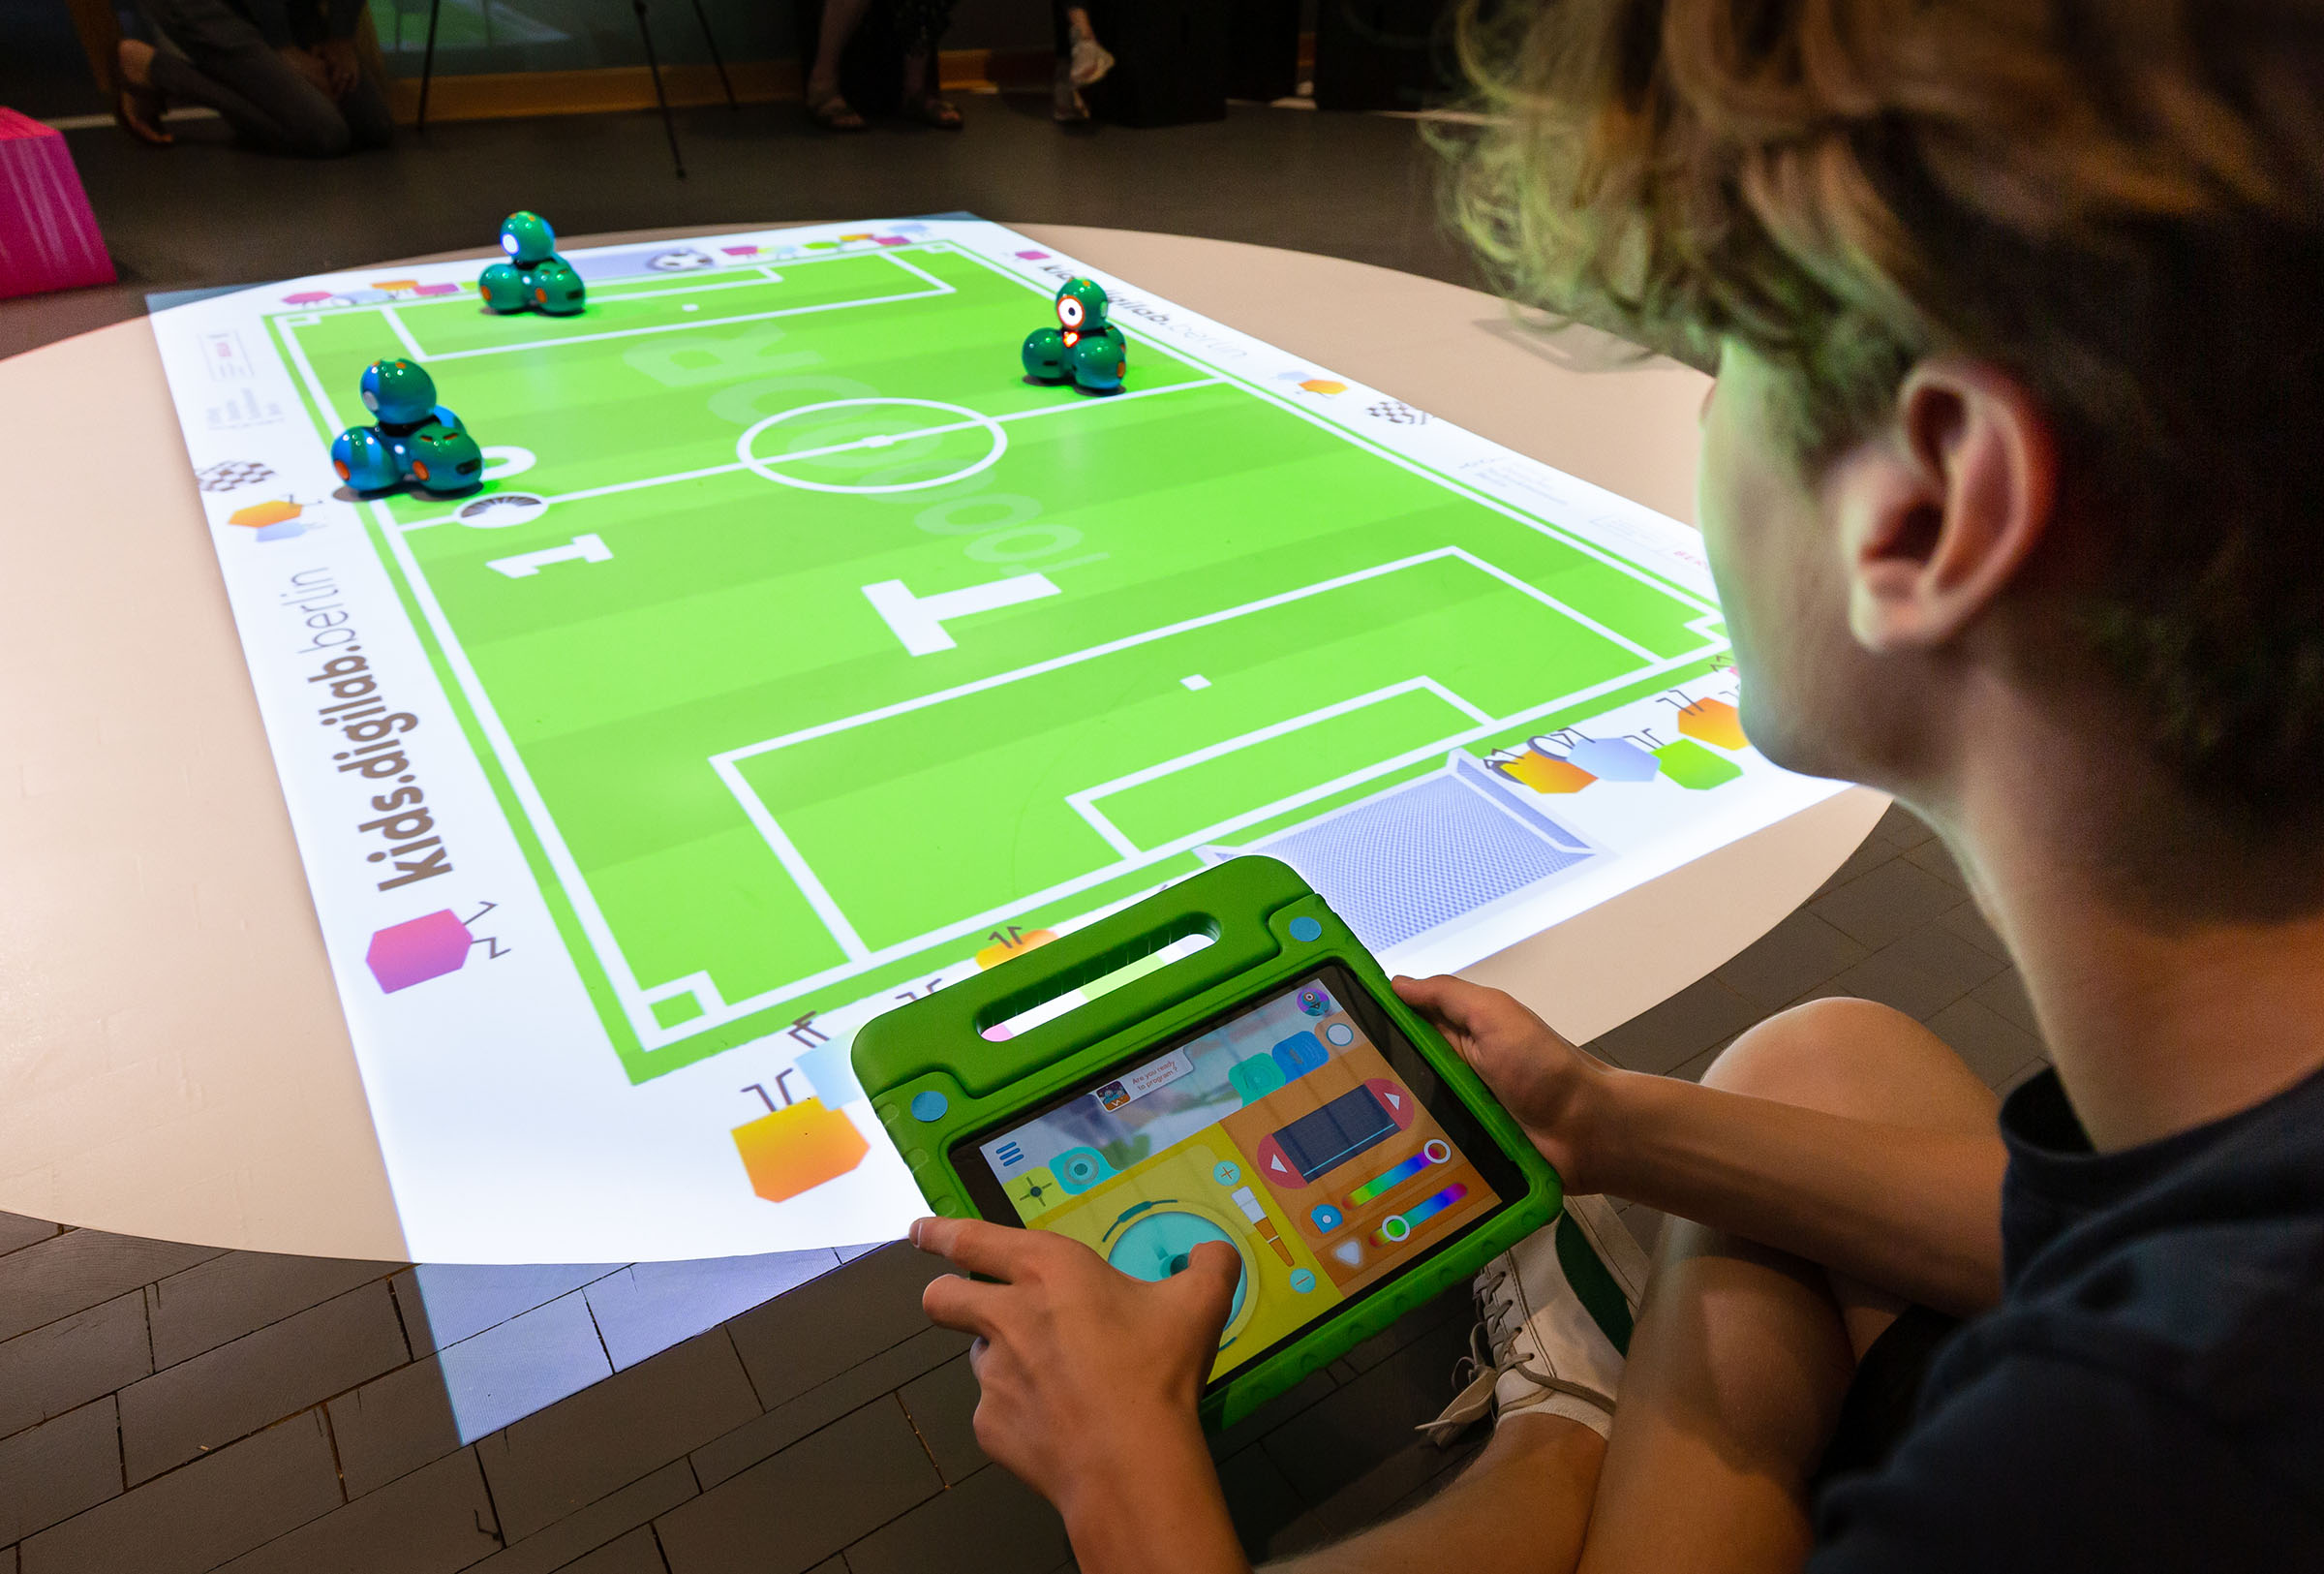 Drei Dash-Roboter spielen auf einem projizierten Fußballfeld Fußbald. Kind steuert mit Tablet einen Roboter.